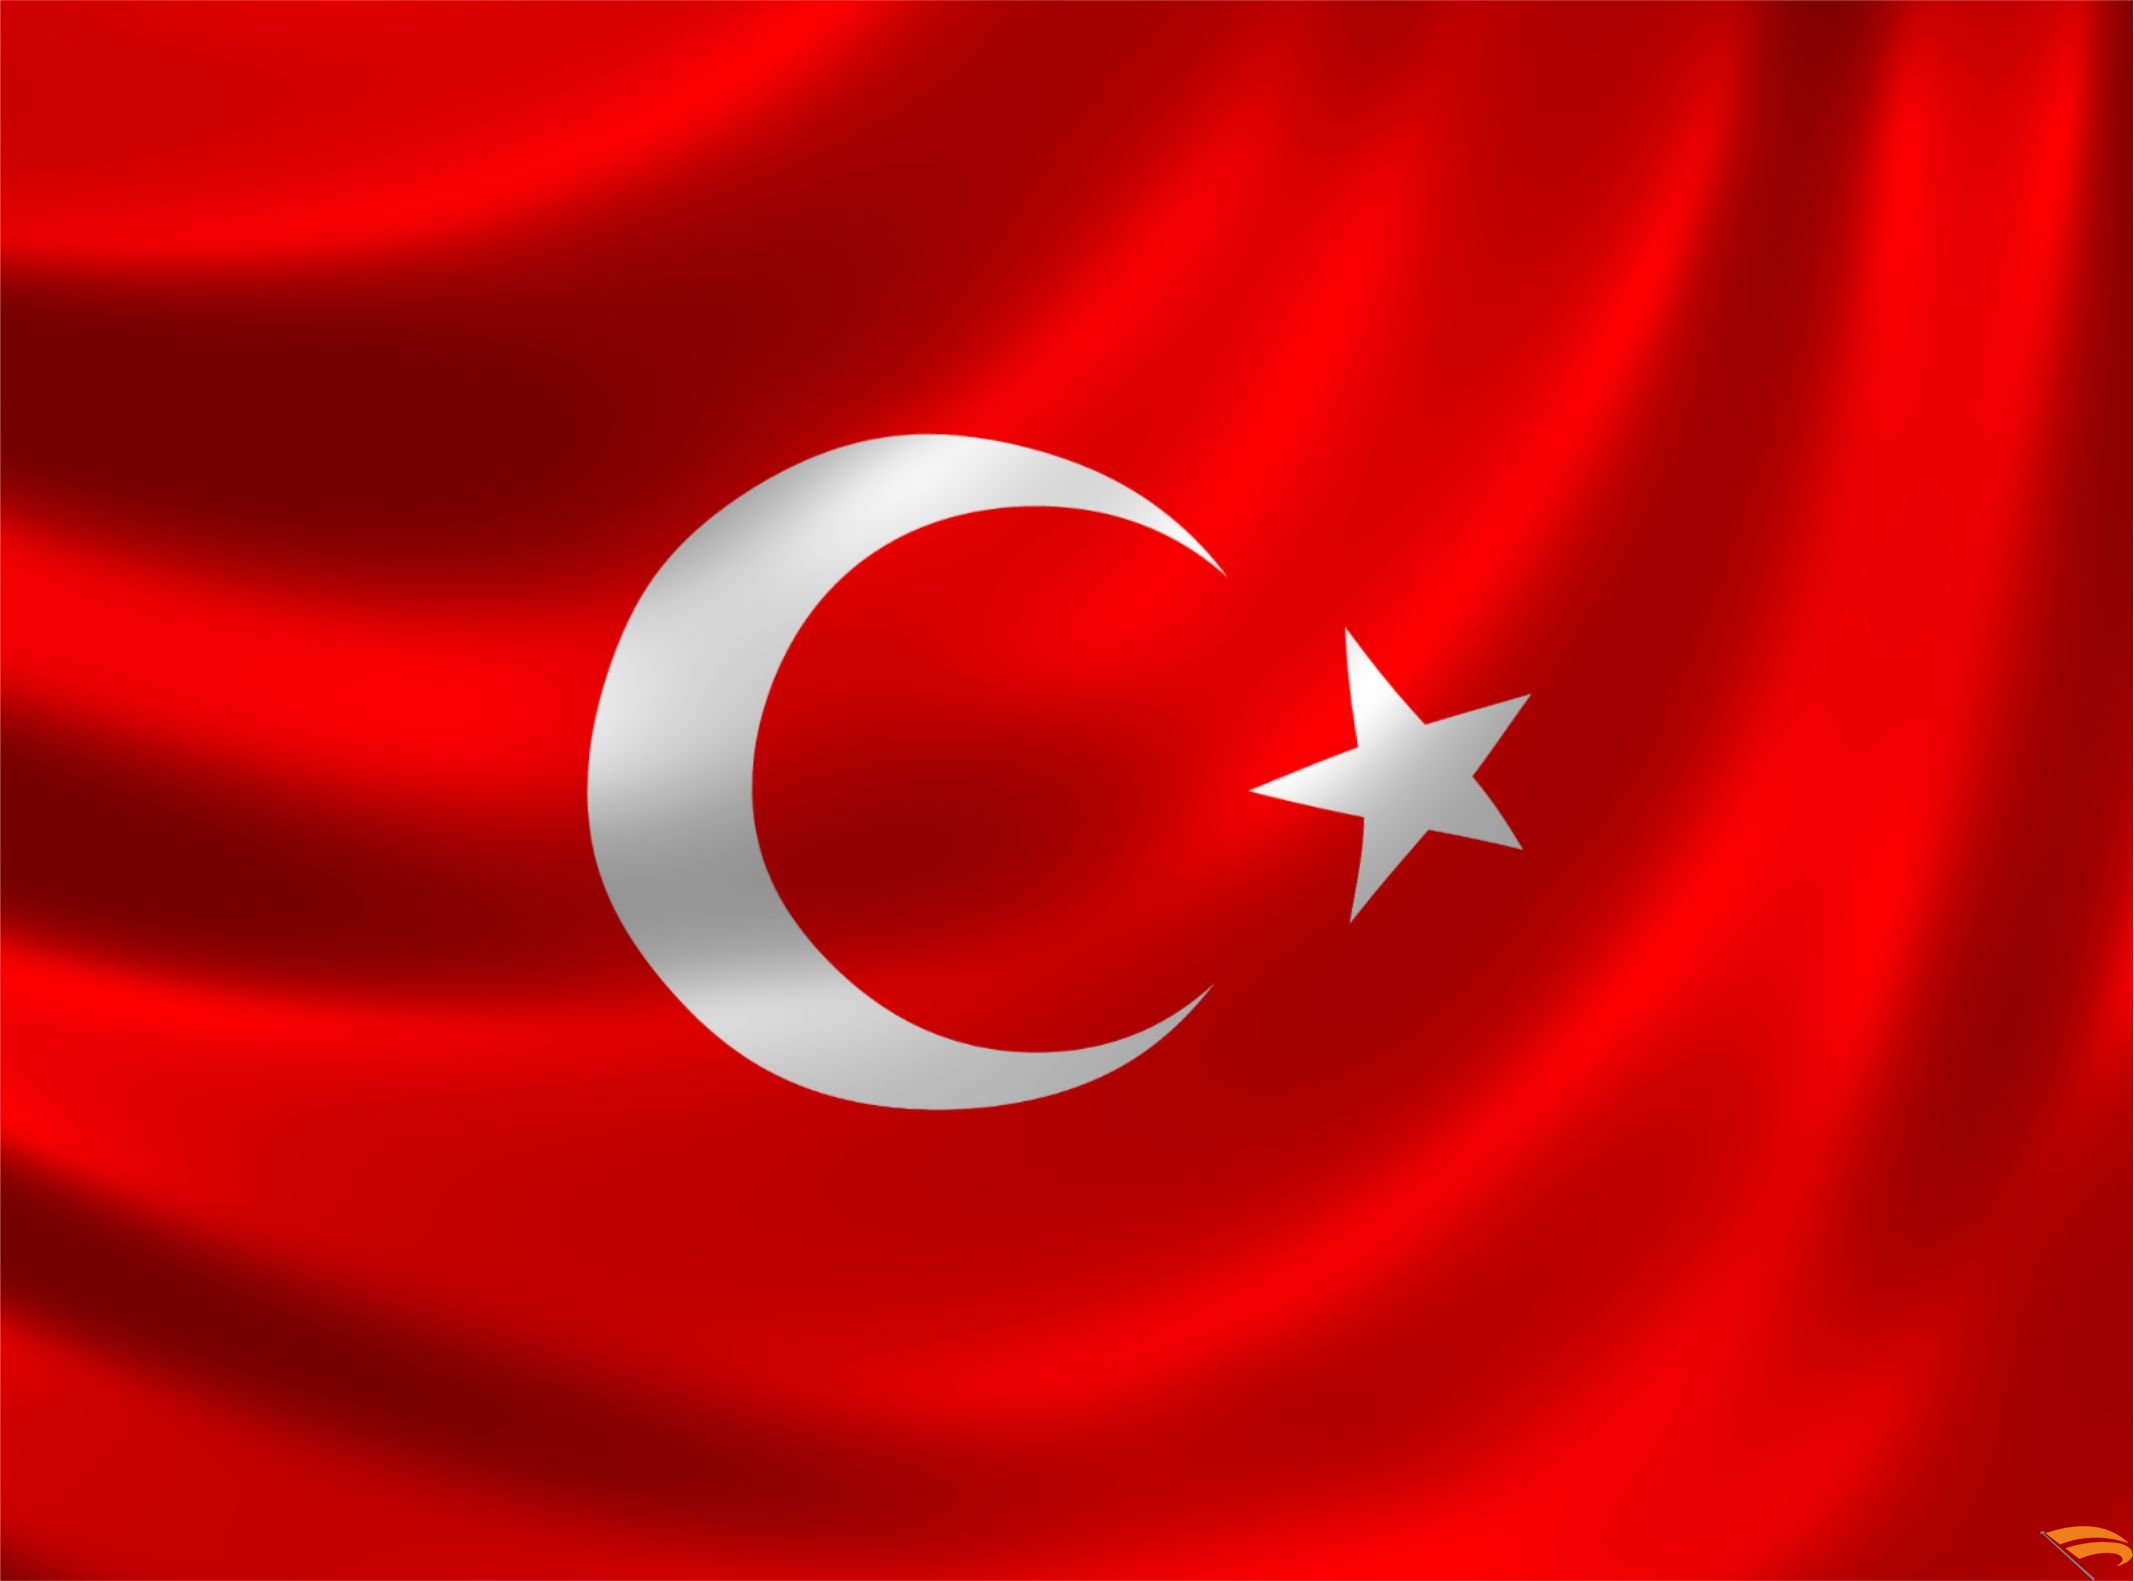 Turkish ambassador to Switzerland dies after long illness